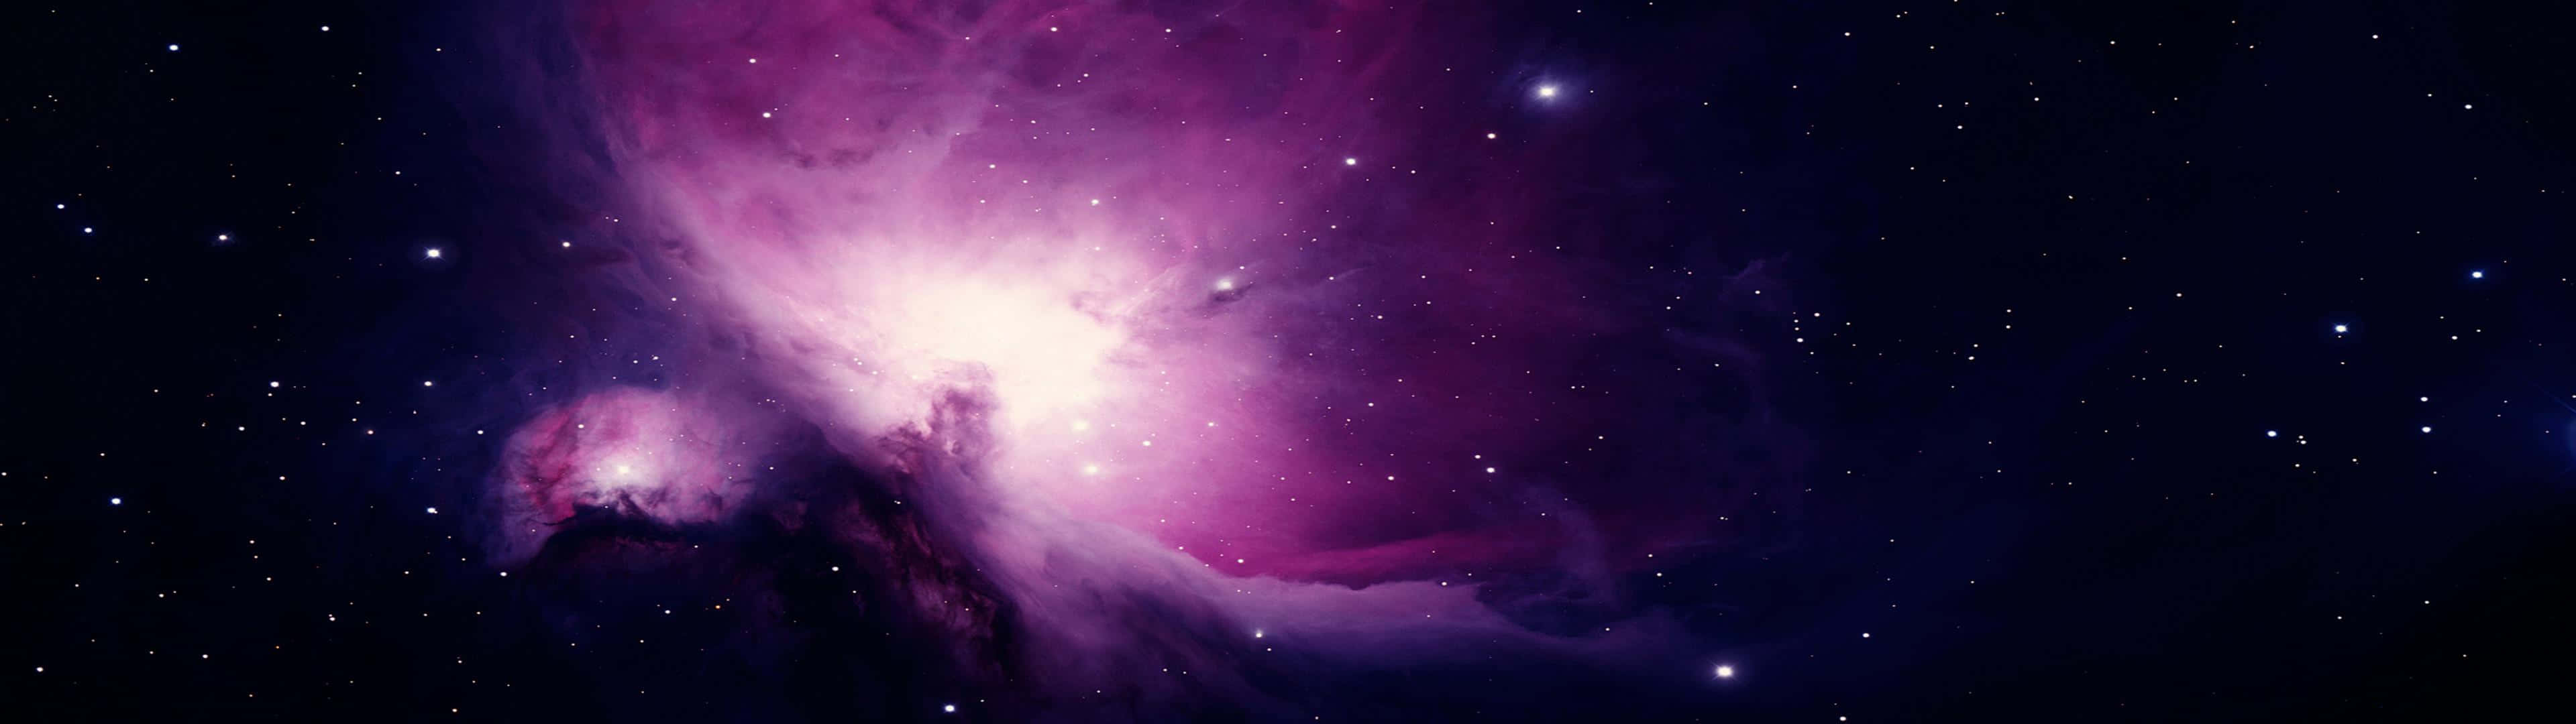 Space Hd 3840x1080 Purple Stars Wallpaper